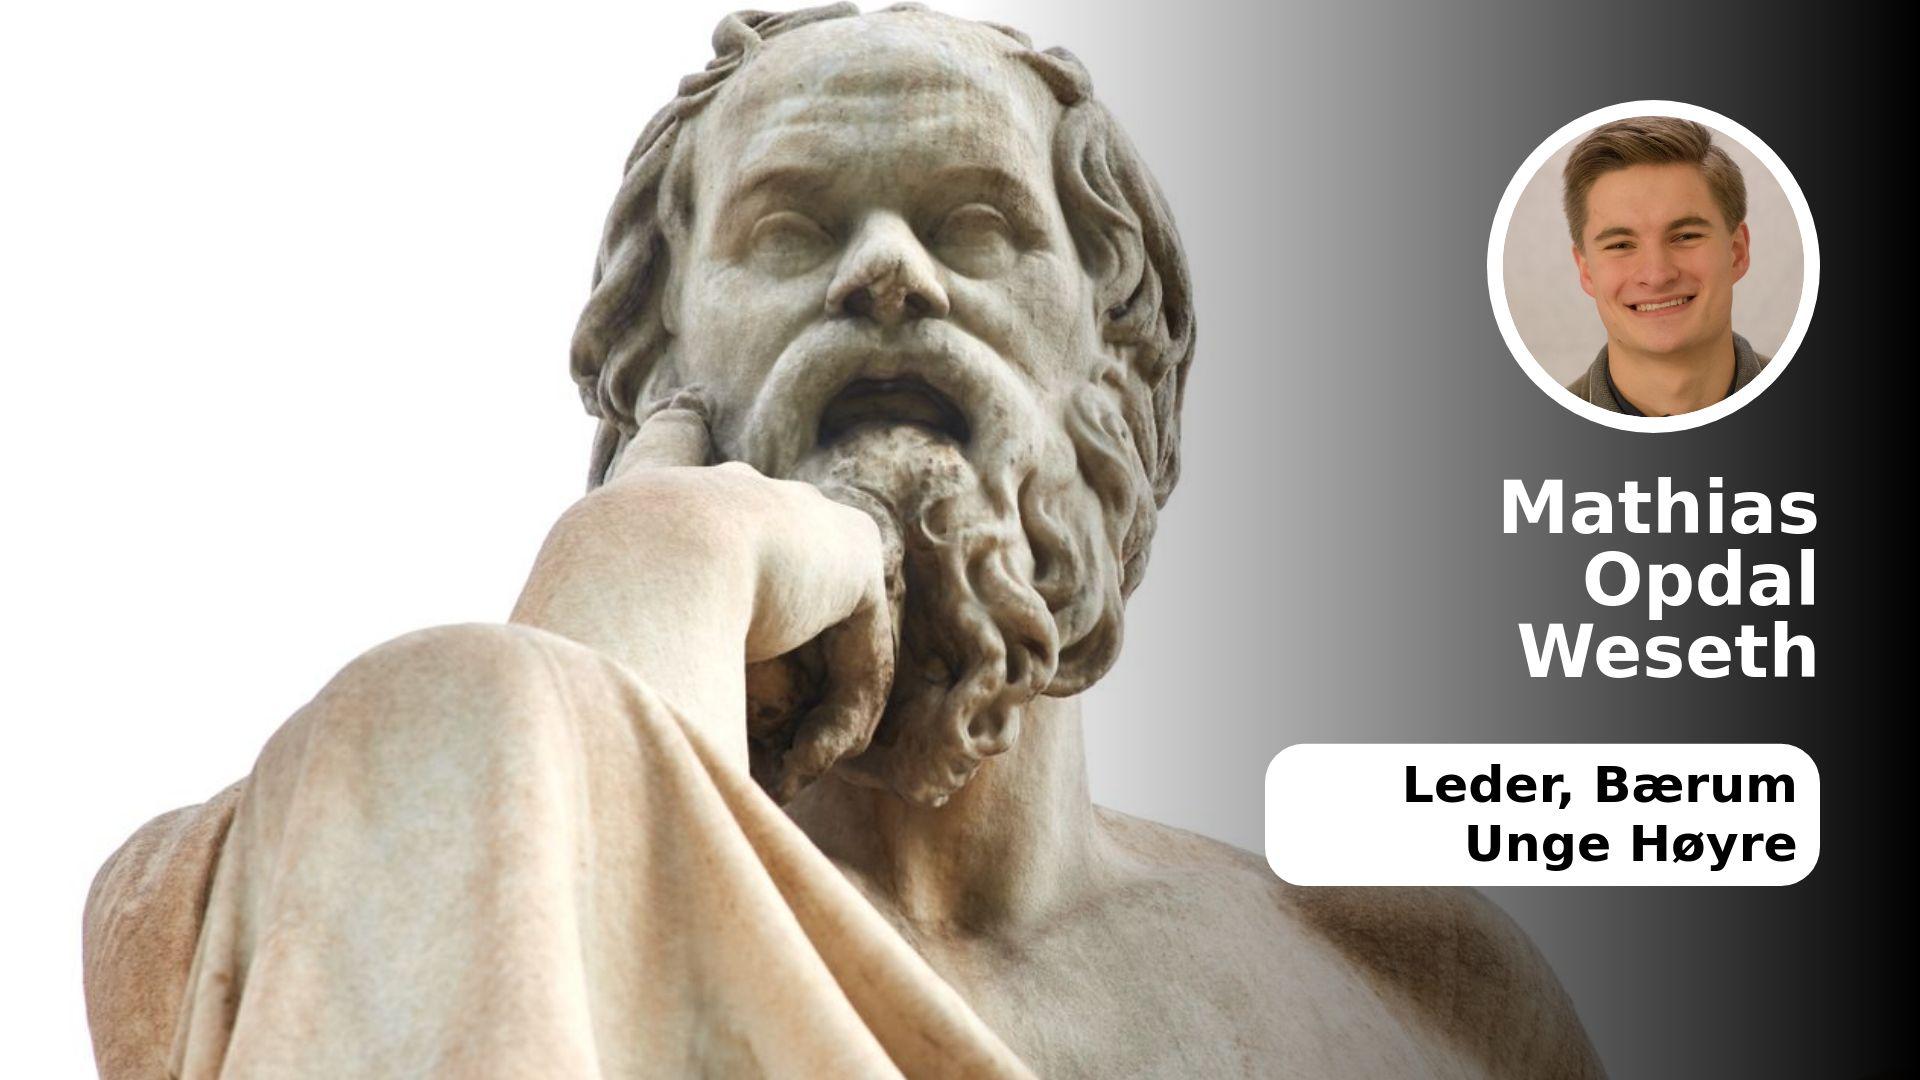  Alt fra antikkens filosofi, her representert ved en av Athens Sokrates-statuer, til moderne fysikk skal pugges, skriver artikkelforfatteren. 